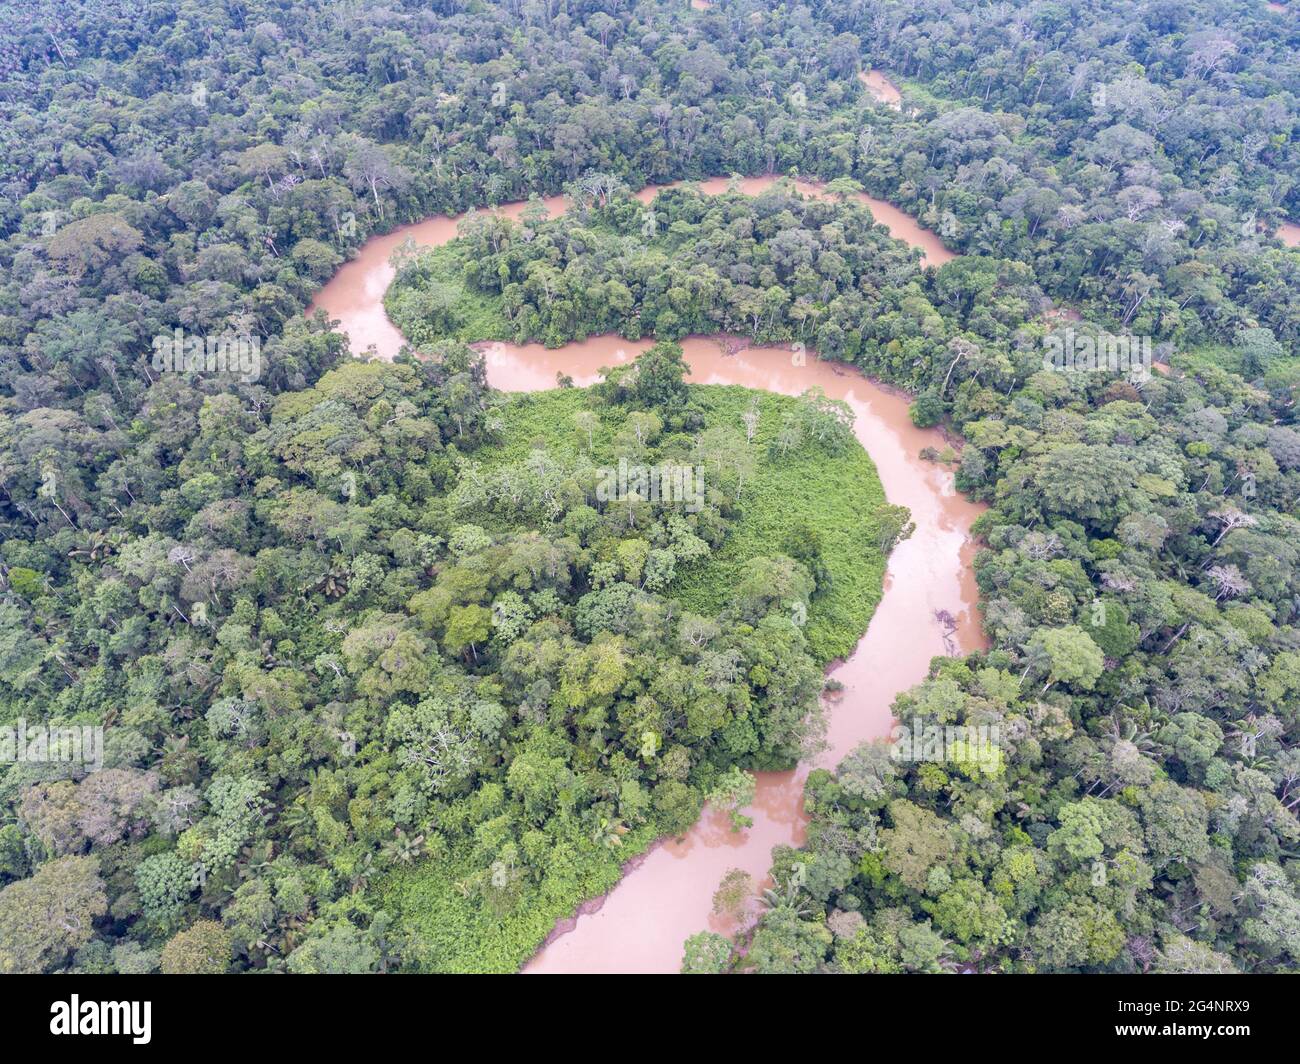 Luftaufnahme einer Biegung im Rio Shiripuno, einem Nebenfluss des Amazonas, der durch den unberührten tropischen Regenwald Ecuadors fließt Stockfoto